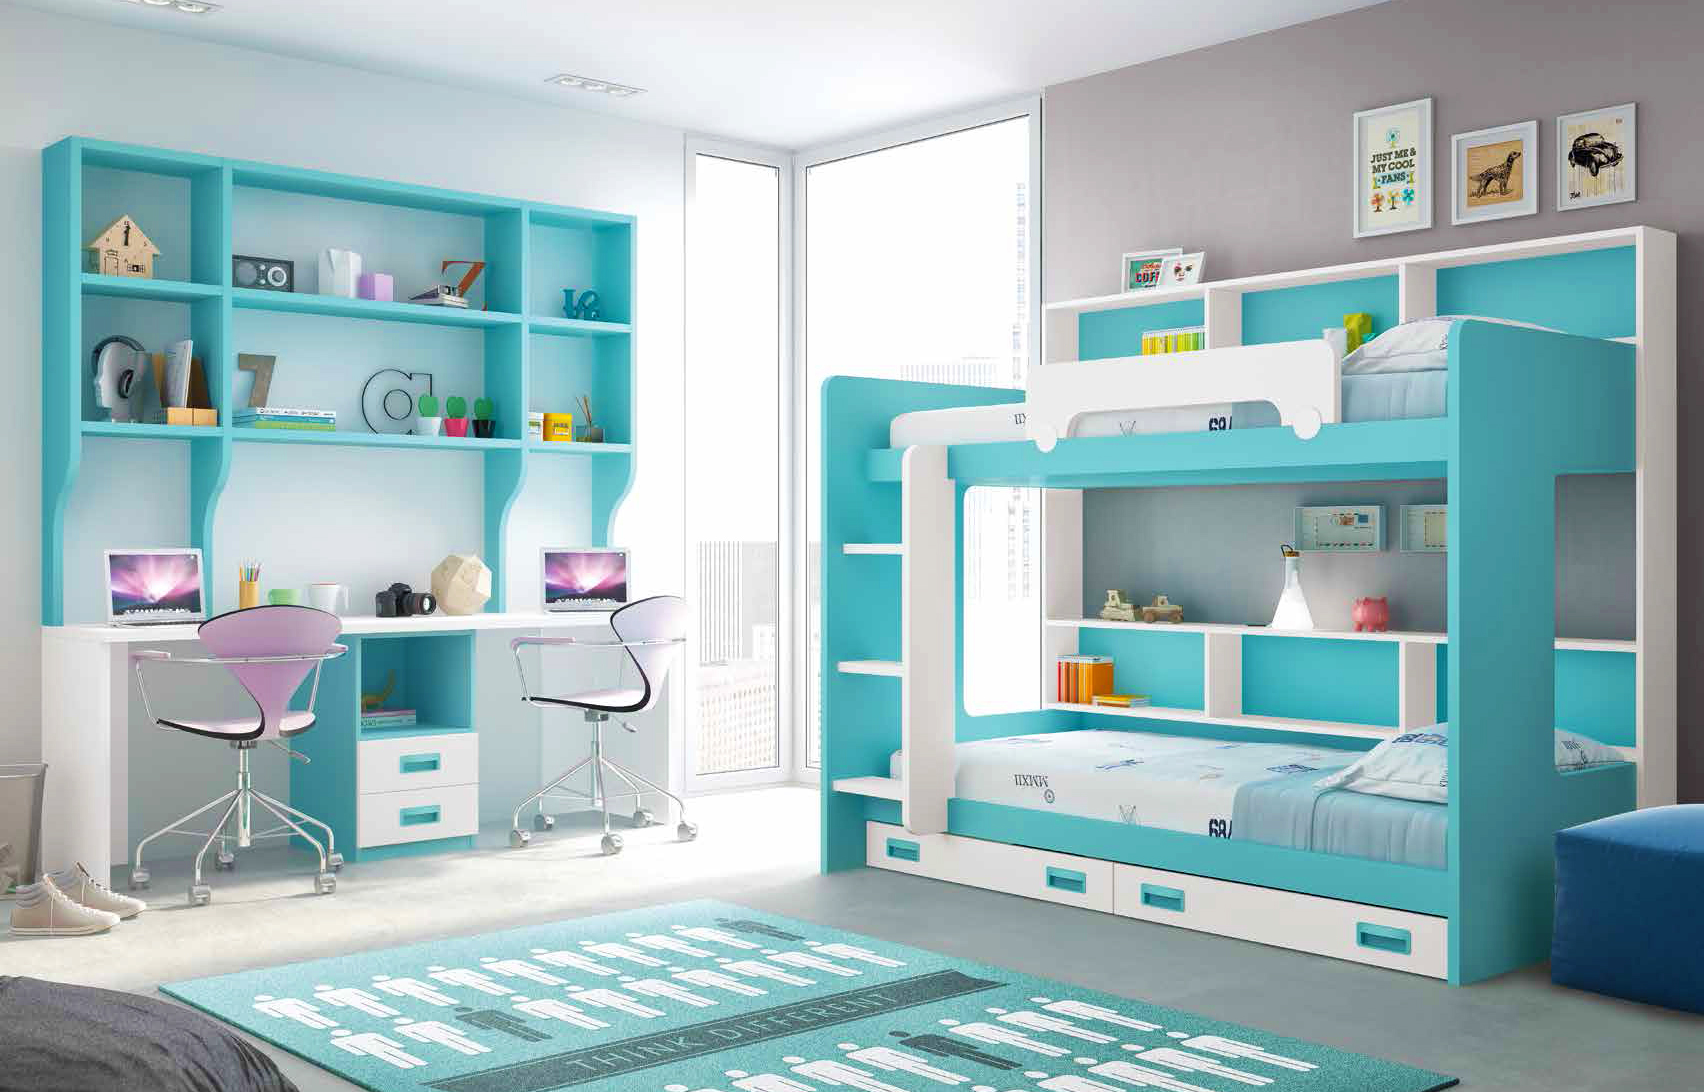 Petite chambre d'ado : 20 idées pratiques pour l'aménager